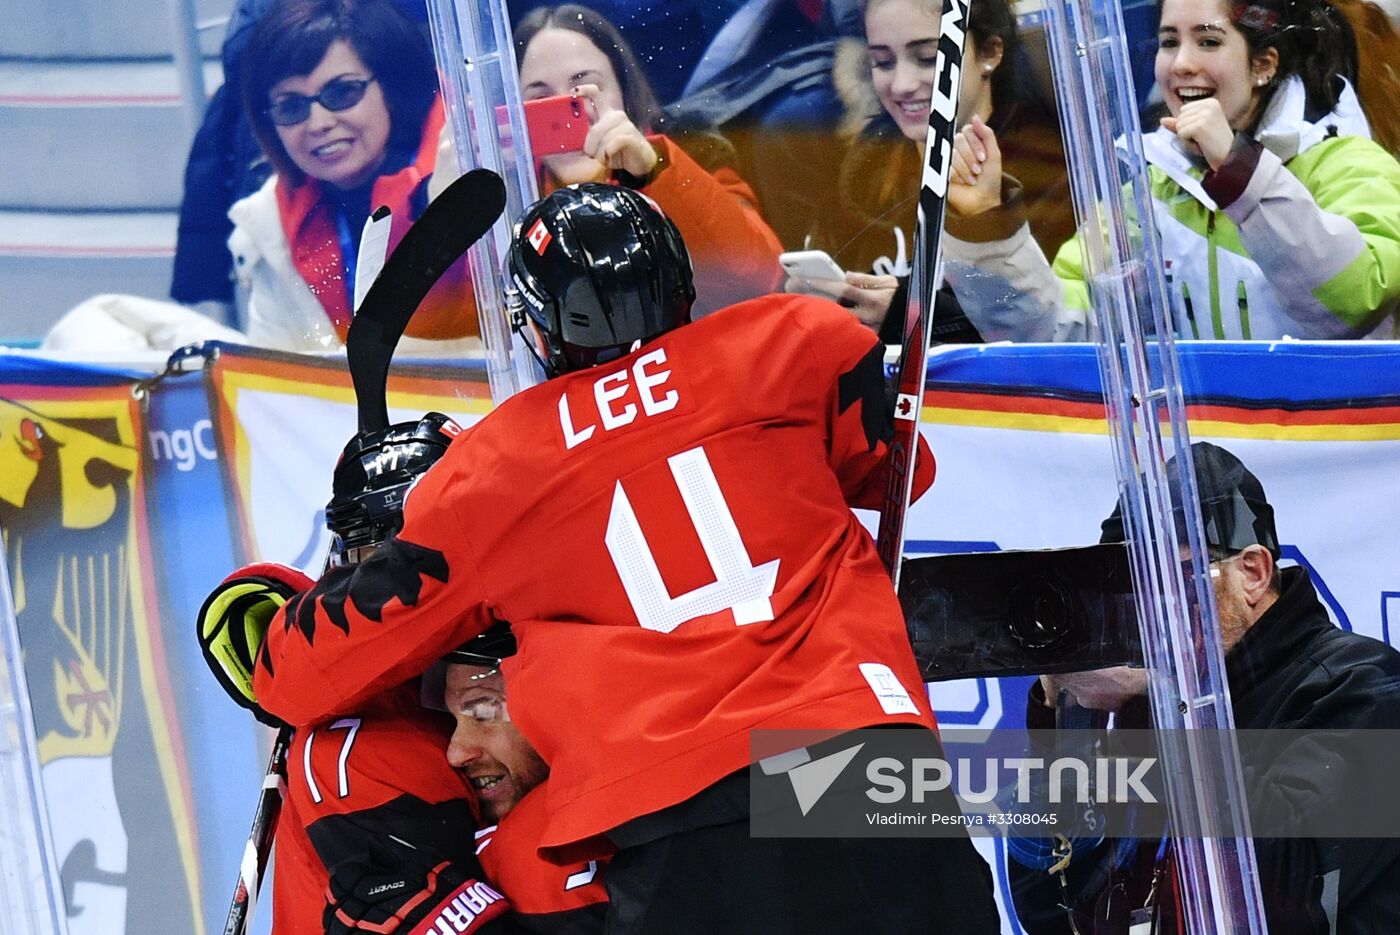 2018 Winter Olympics. Ice hockey. Men. Canada vs. Germany